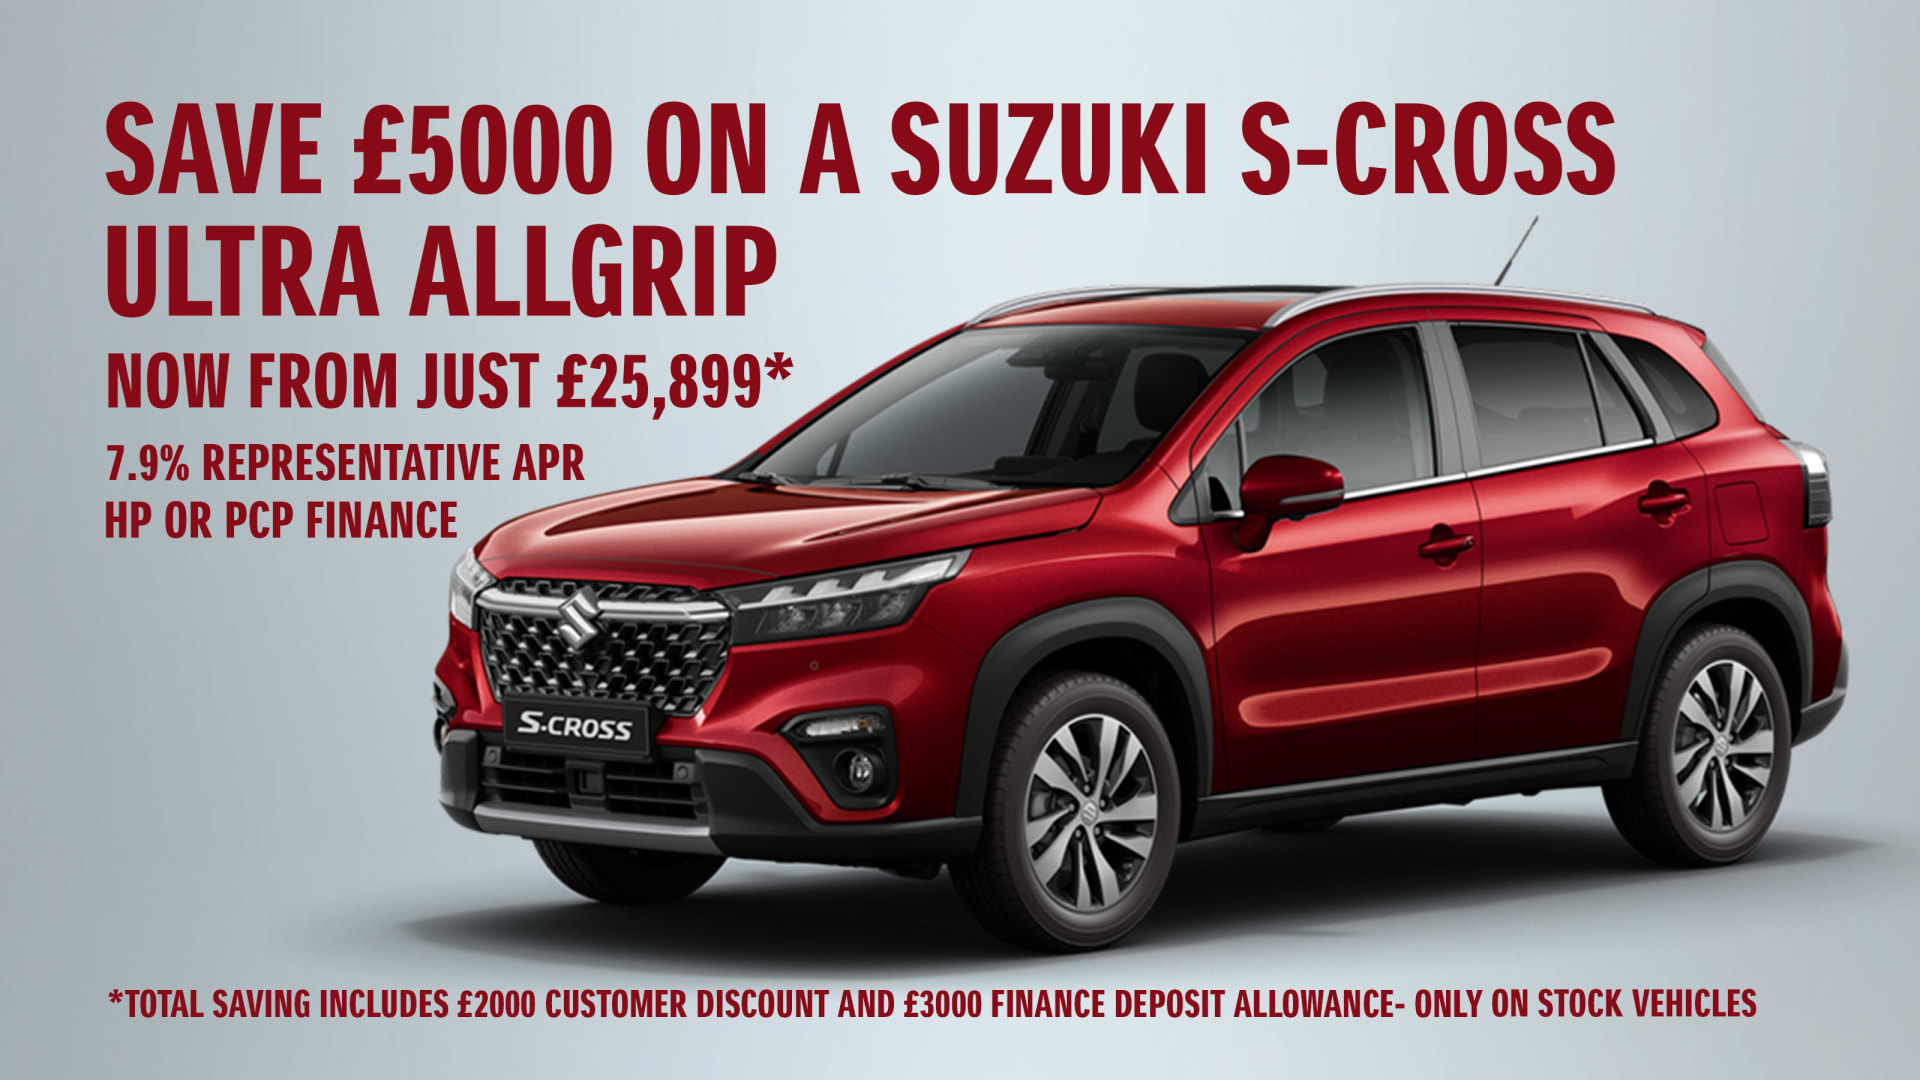 Suzuki S-Cross £5000 Saving